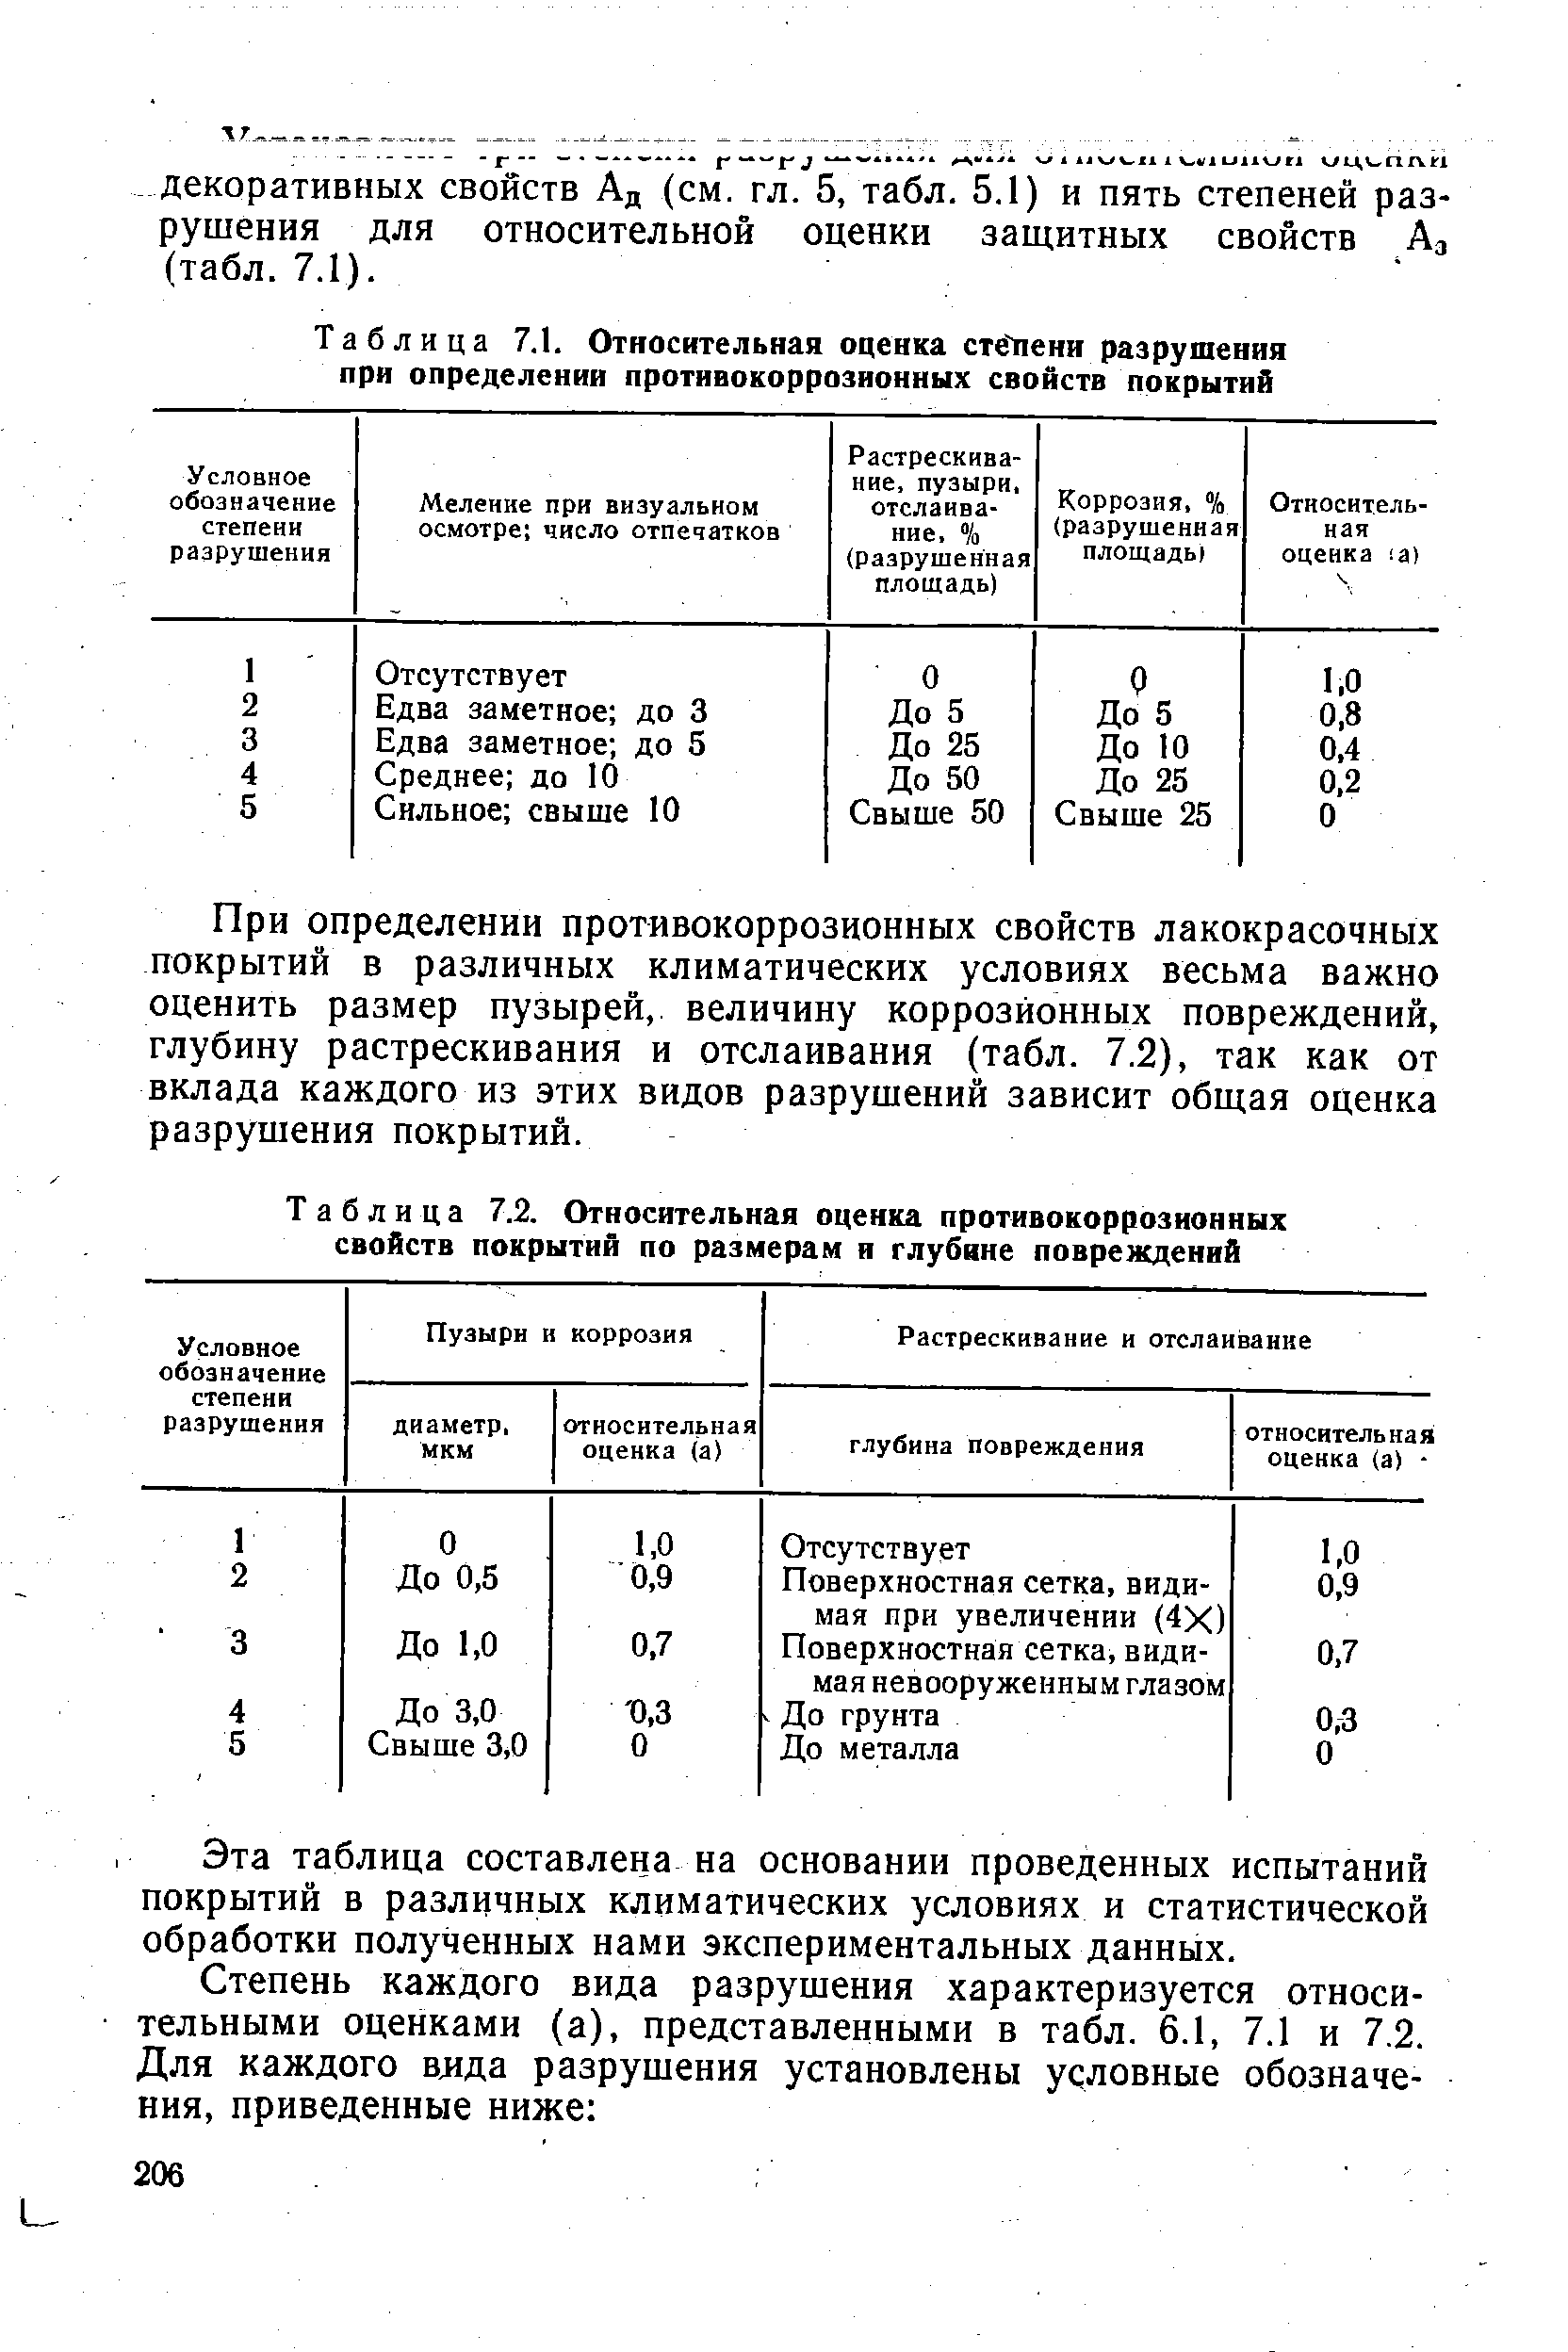 Таблица 7.2. Относительная оценка противокоррозионных свойств покрытий по размерам и глубине повреждений
